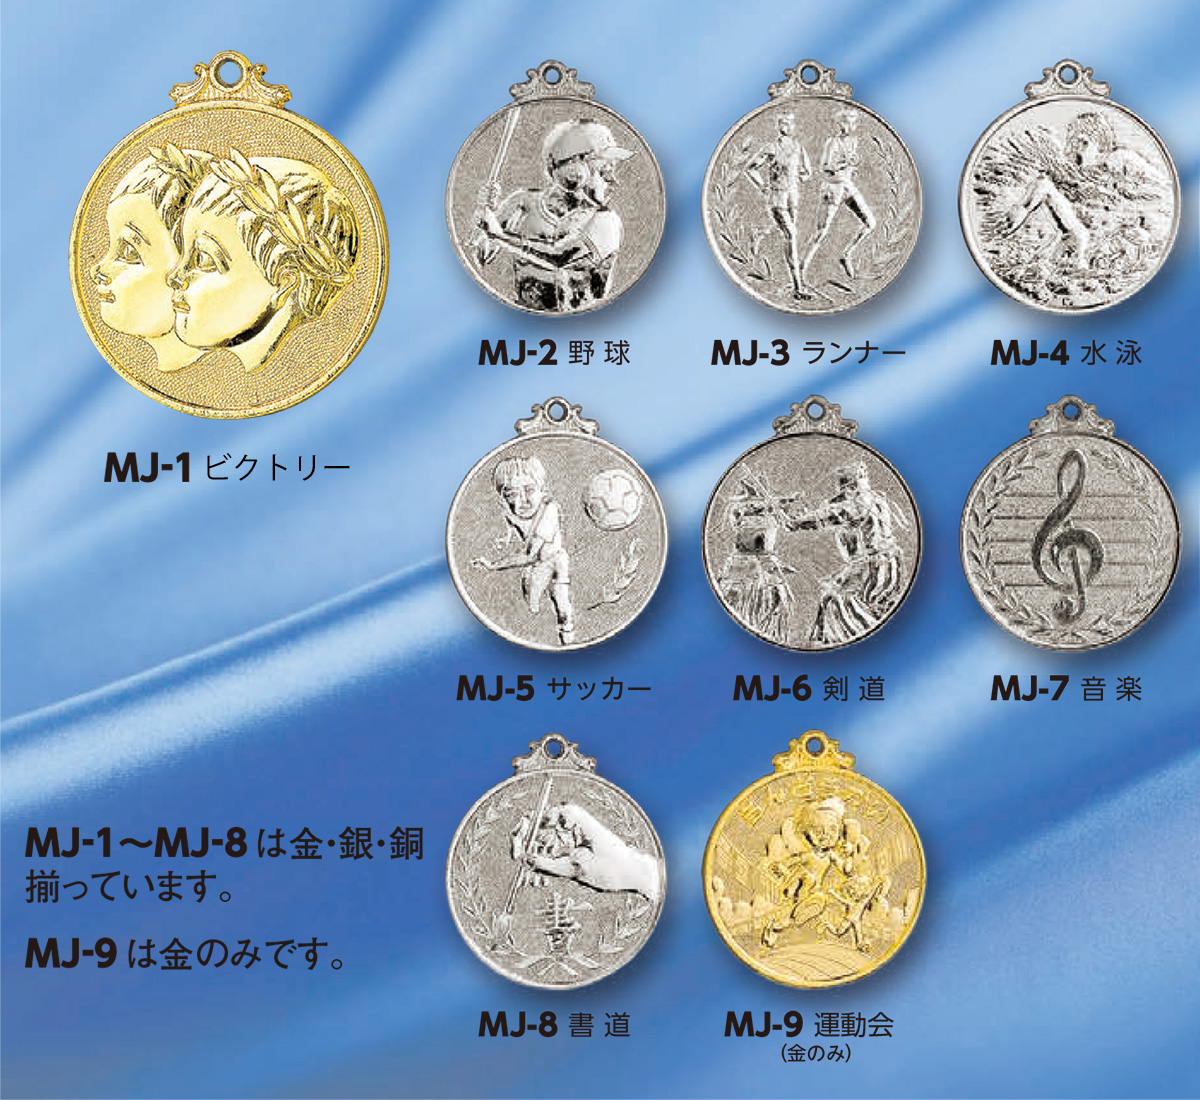 メダル 50mmφ MJメダル画像